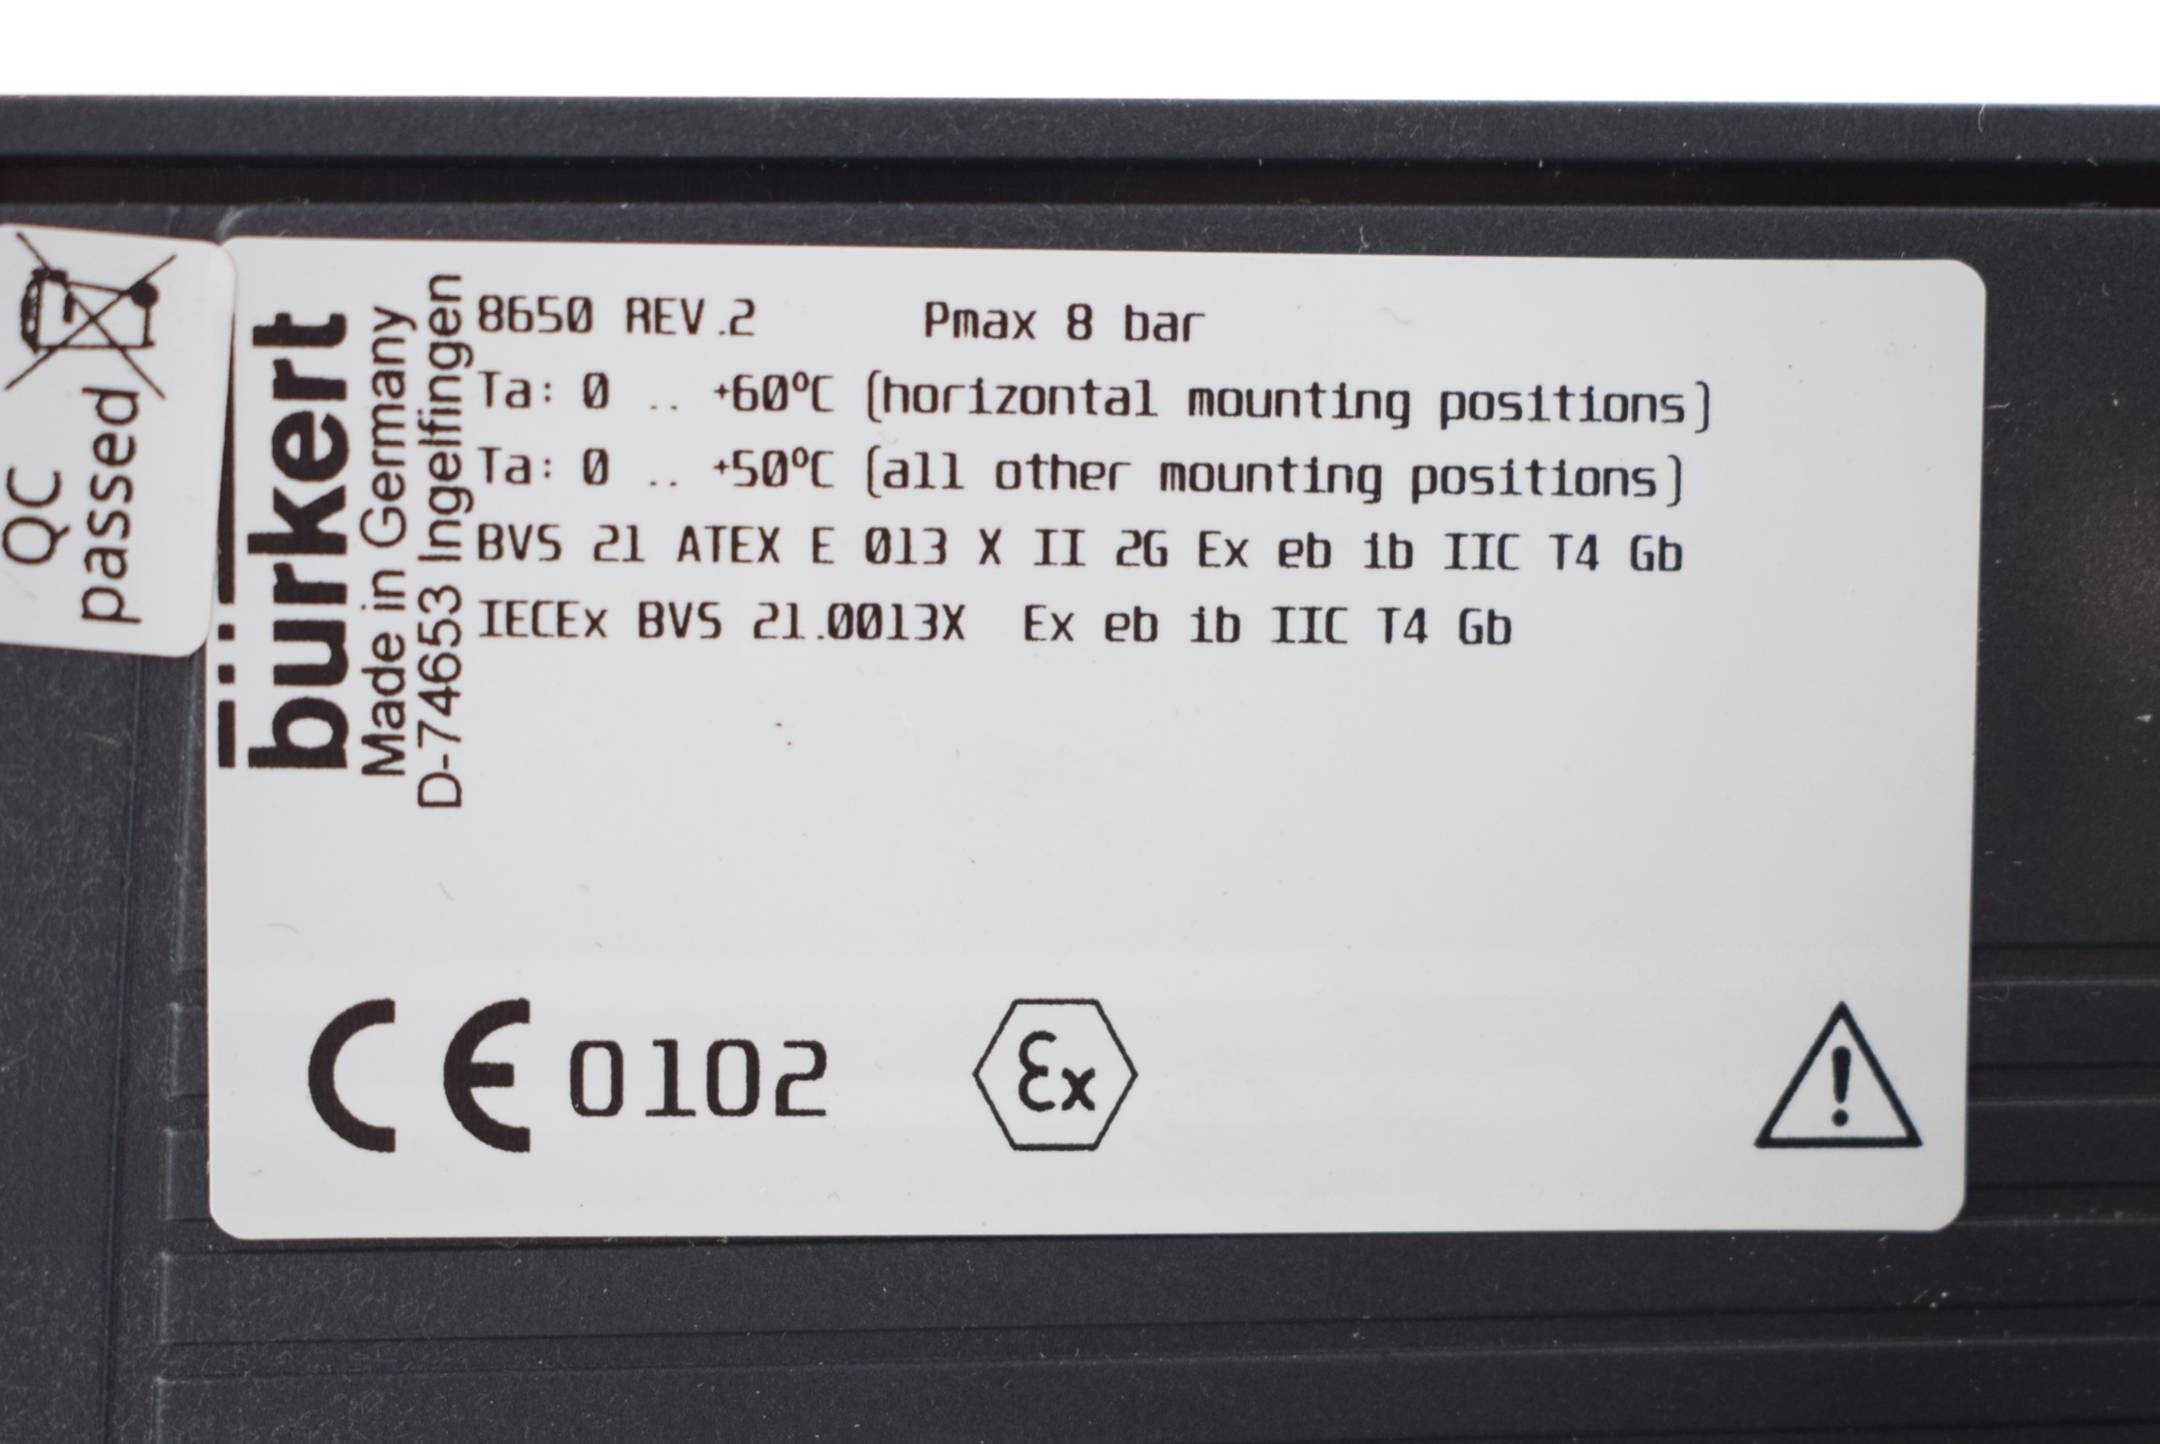 Bürket AirLINE Ex 8bar elektropneumatisches Automatisierungssystem 8650 Rev.2